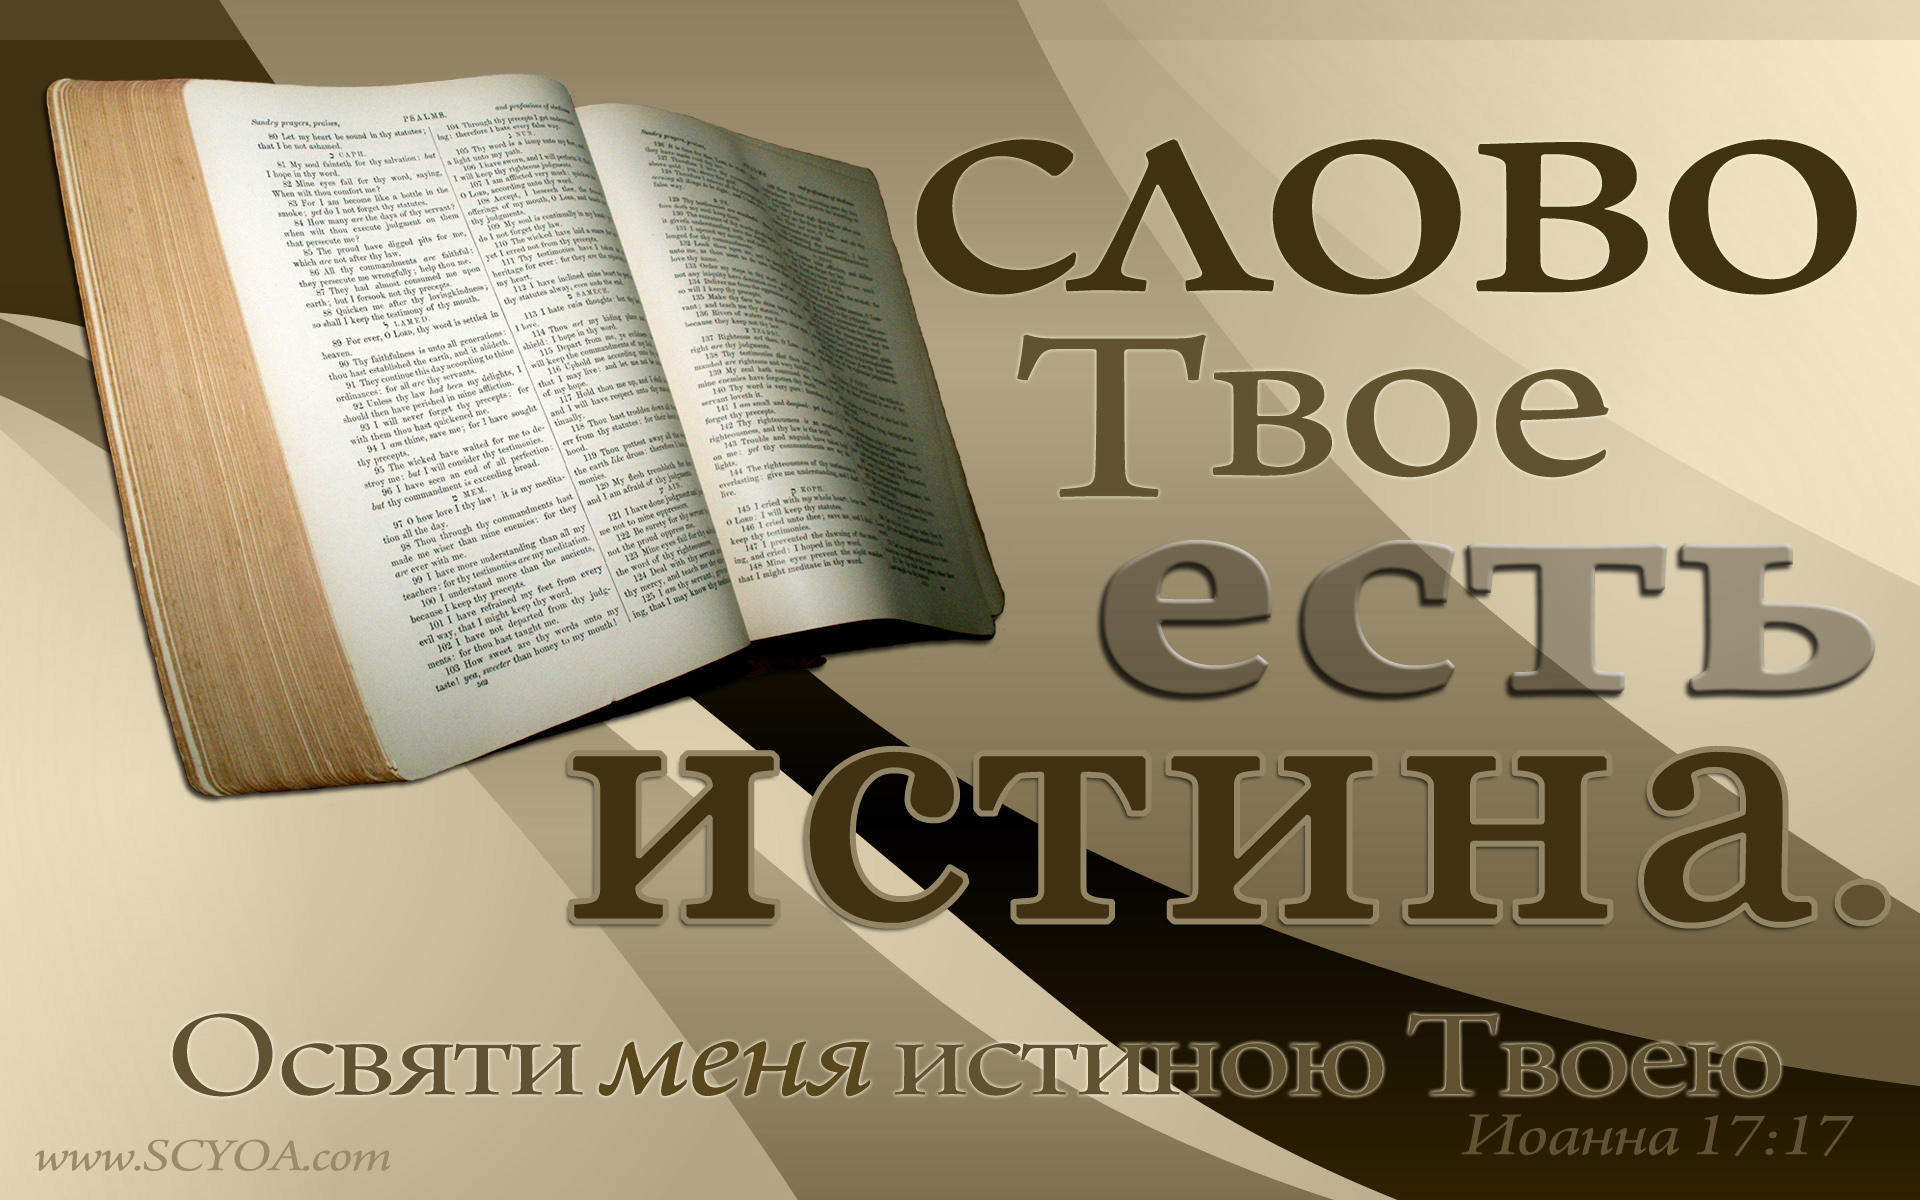 Слова бог с большой буквы. Слово Божье есть истина. Слово твое есть истина Библия. Библия слово Божье. Библия слово Бога.